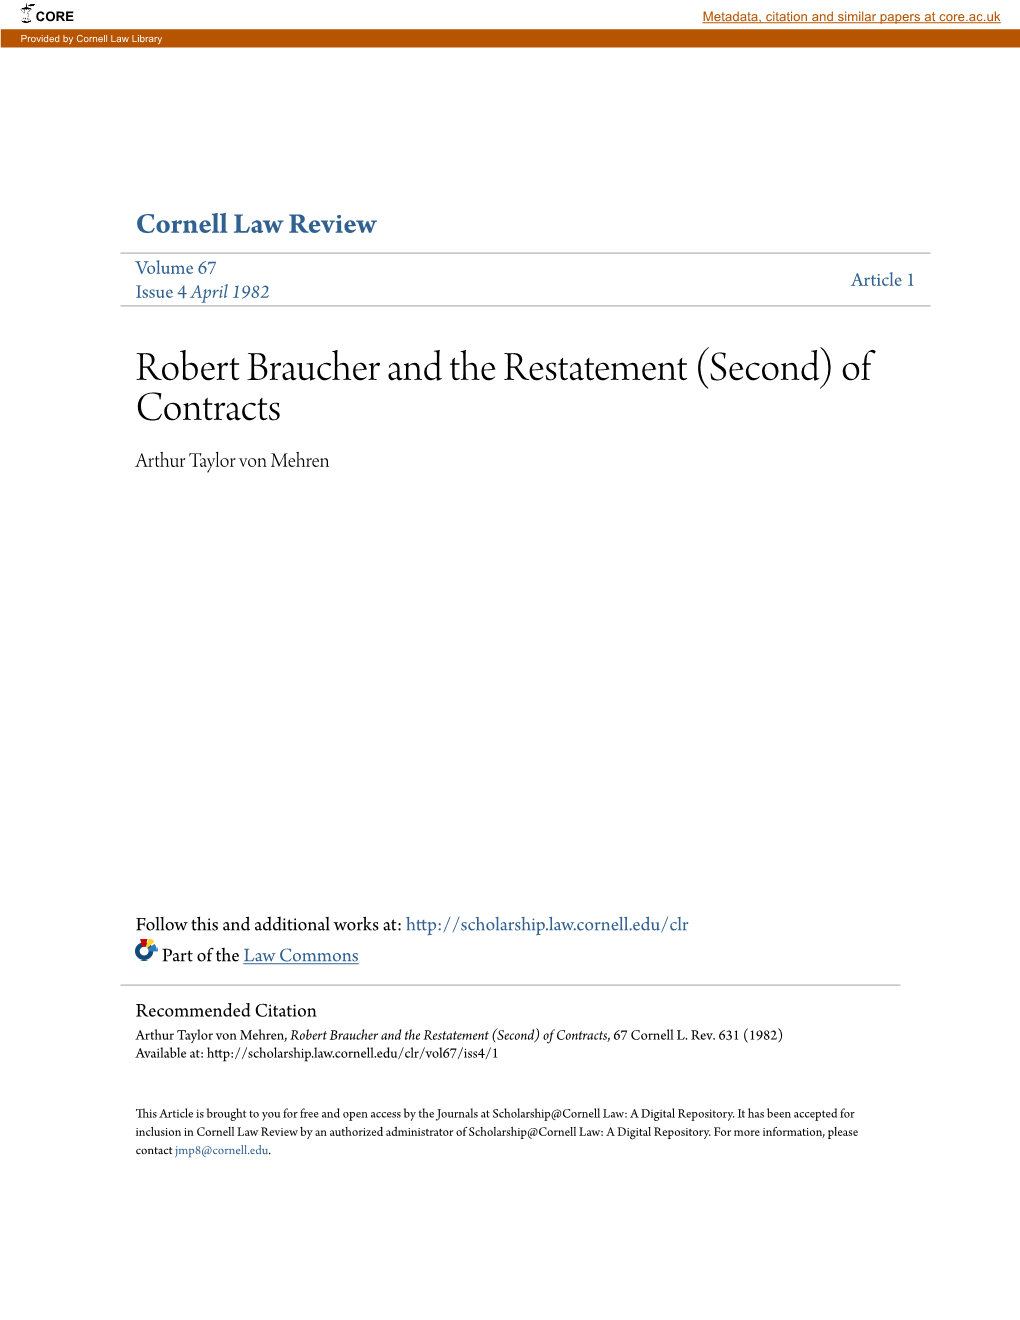 Robert Braucher and the Restatement (Second) of Contracts Arthur Taylor Von Mehren